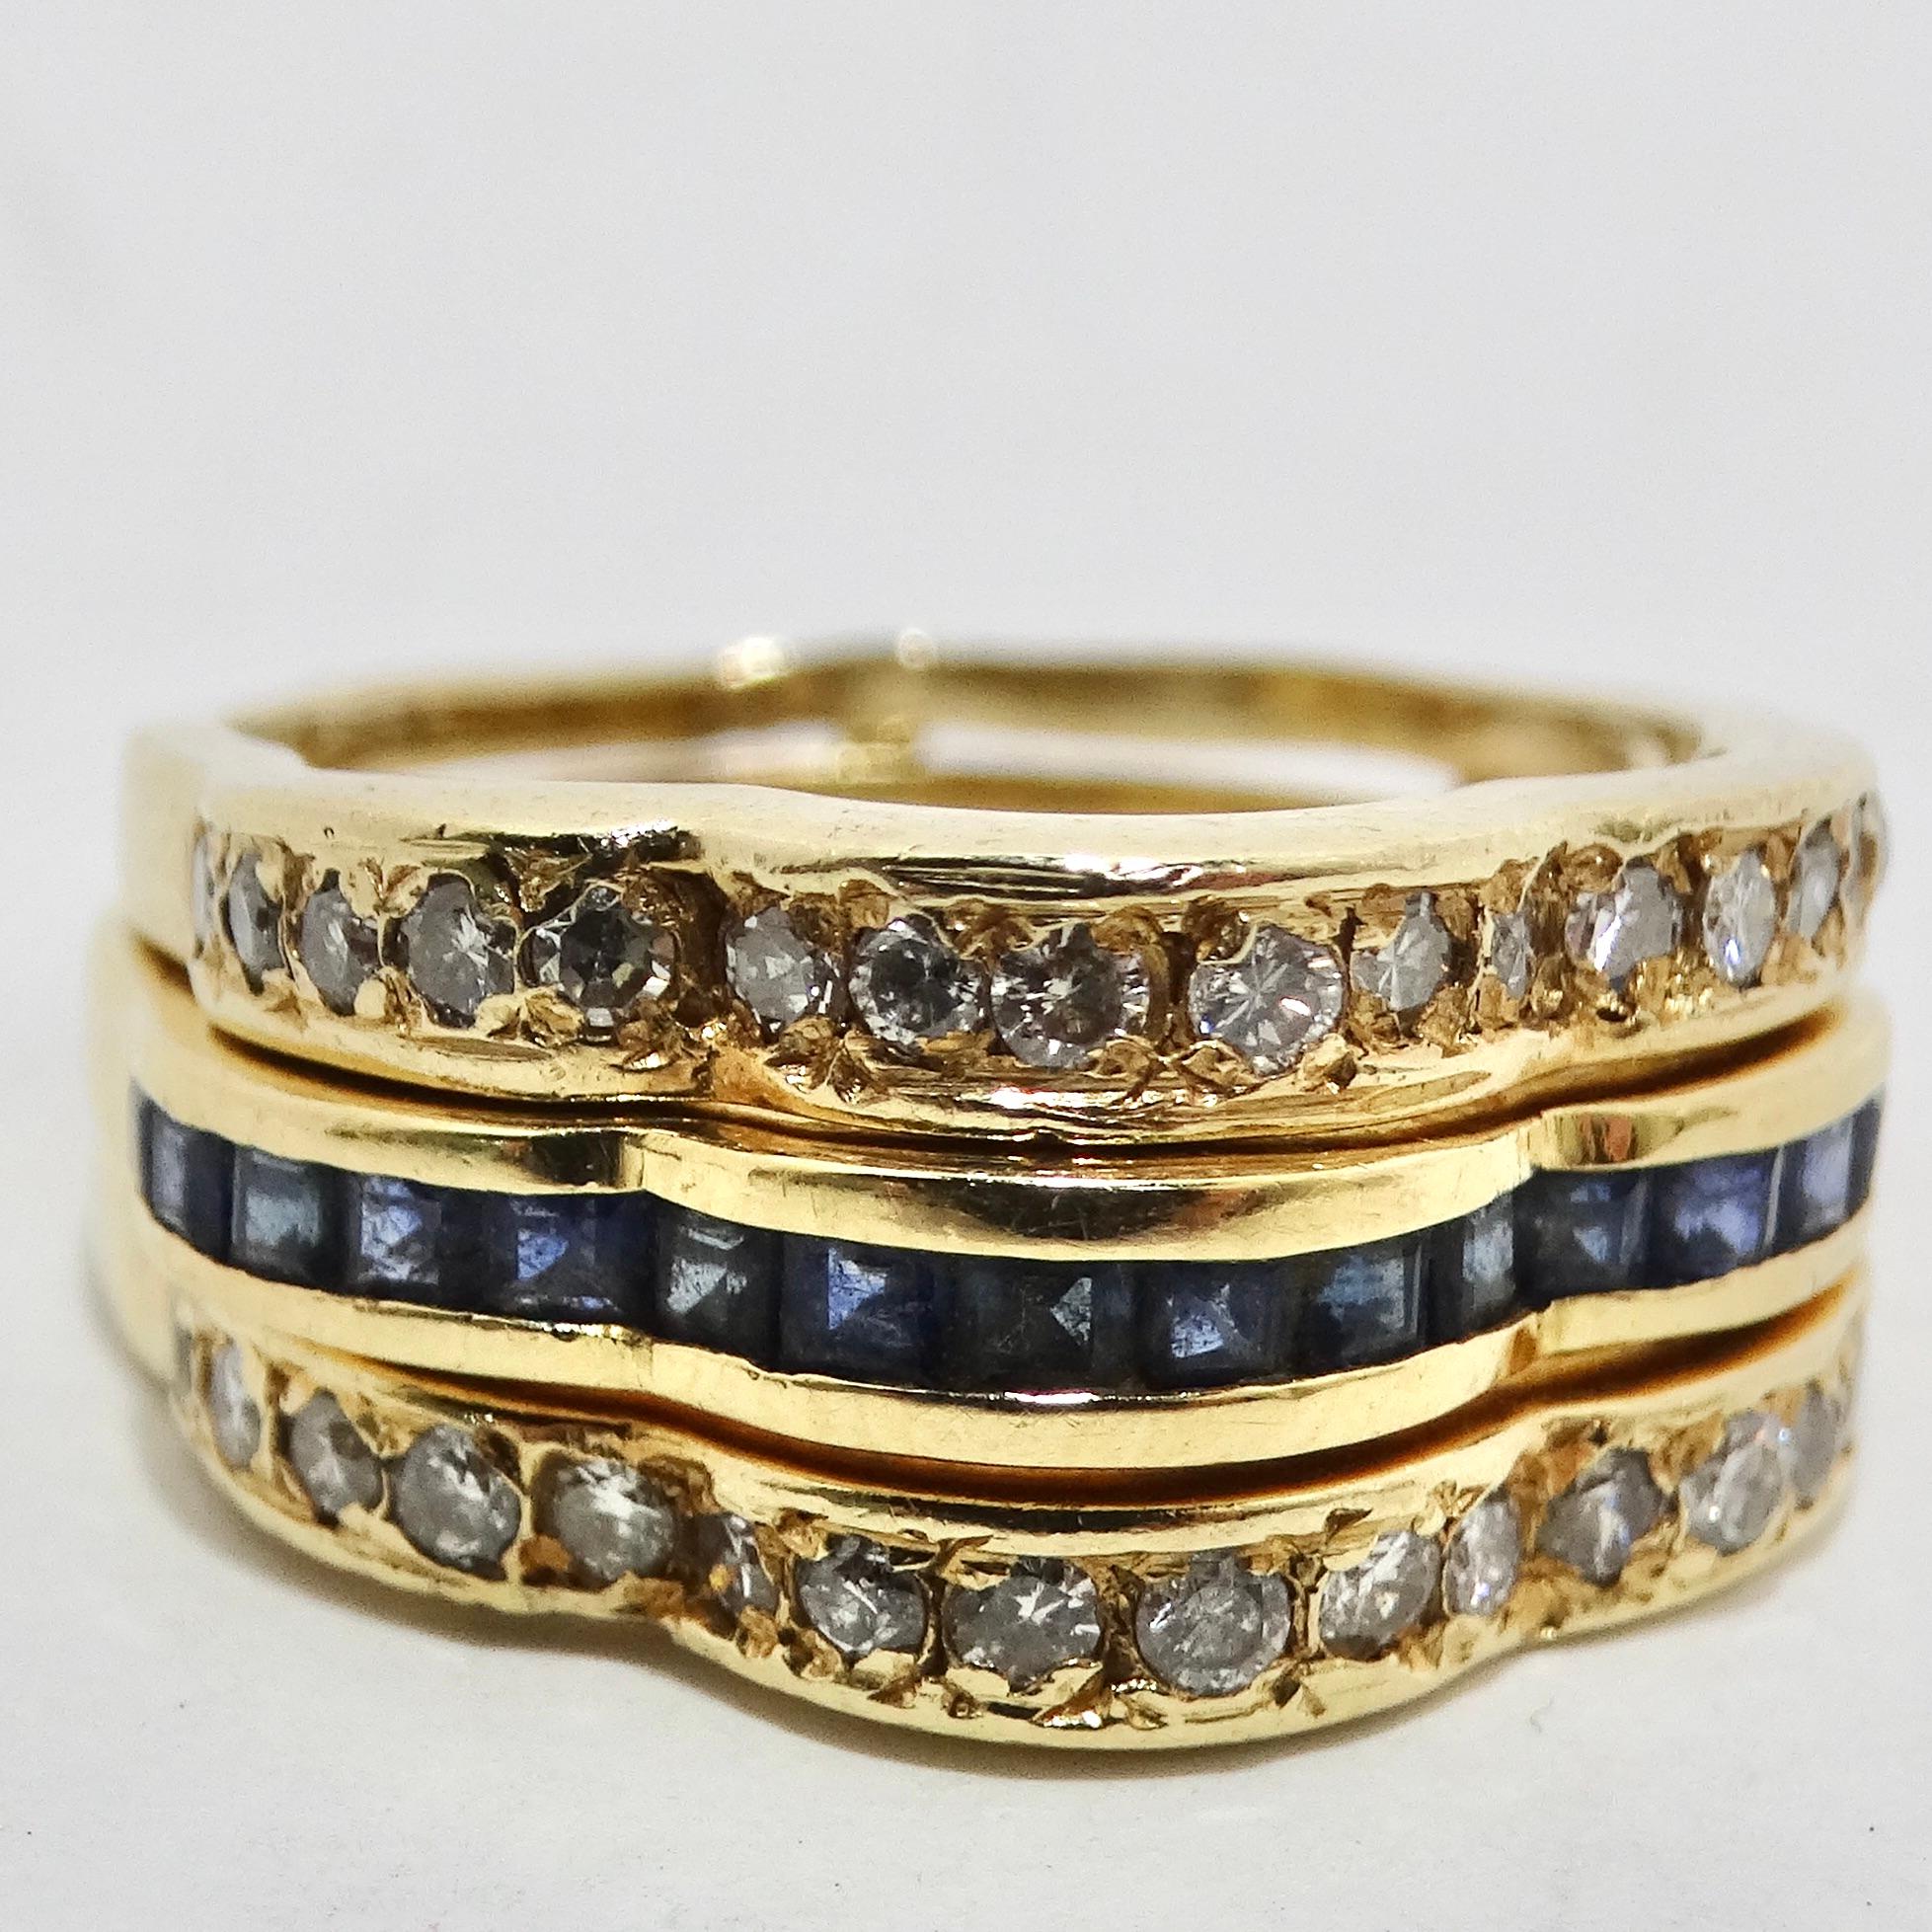 Élevez votre jeu de bijoux avec notre exquise série de quatre bagues Van Cleef en or 18 carats, diamants, rubis, émeraudes et saphirs. Cet ensemble de bagues sur mesure est un chef-d'œuvre de polyvalence et de sophistication, qui vous permet de